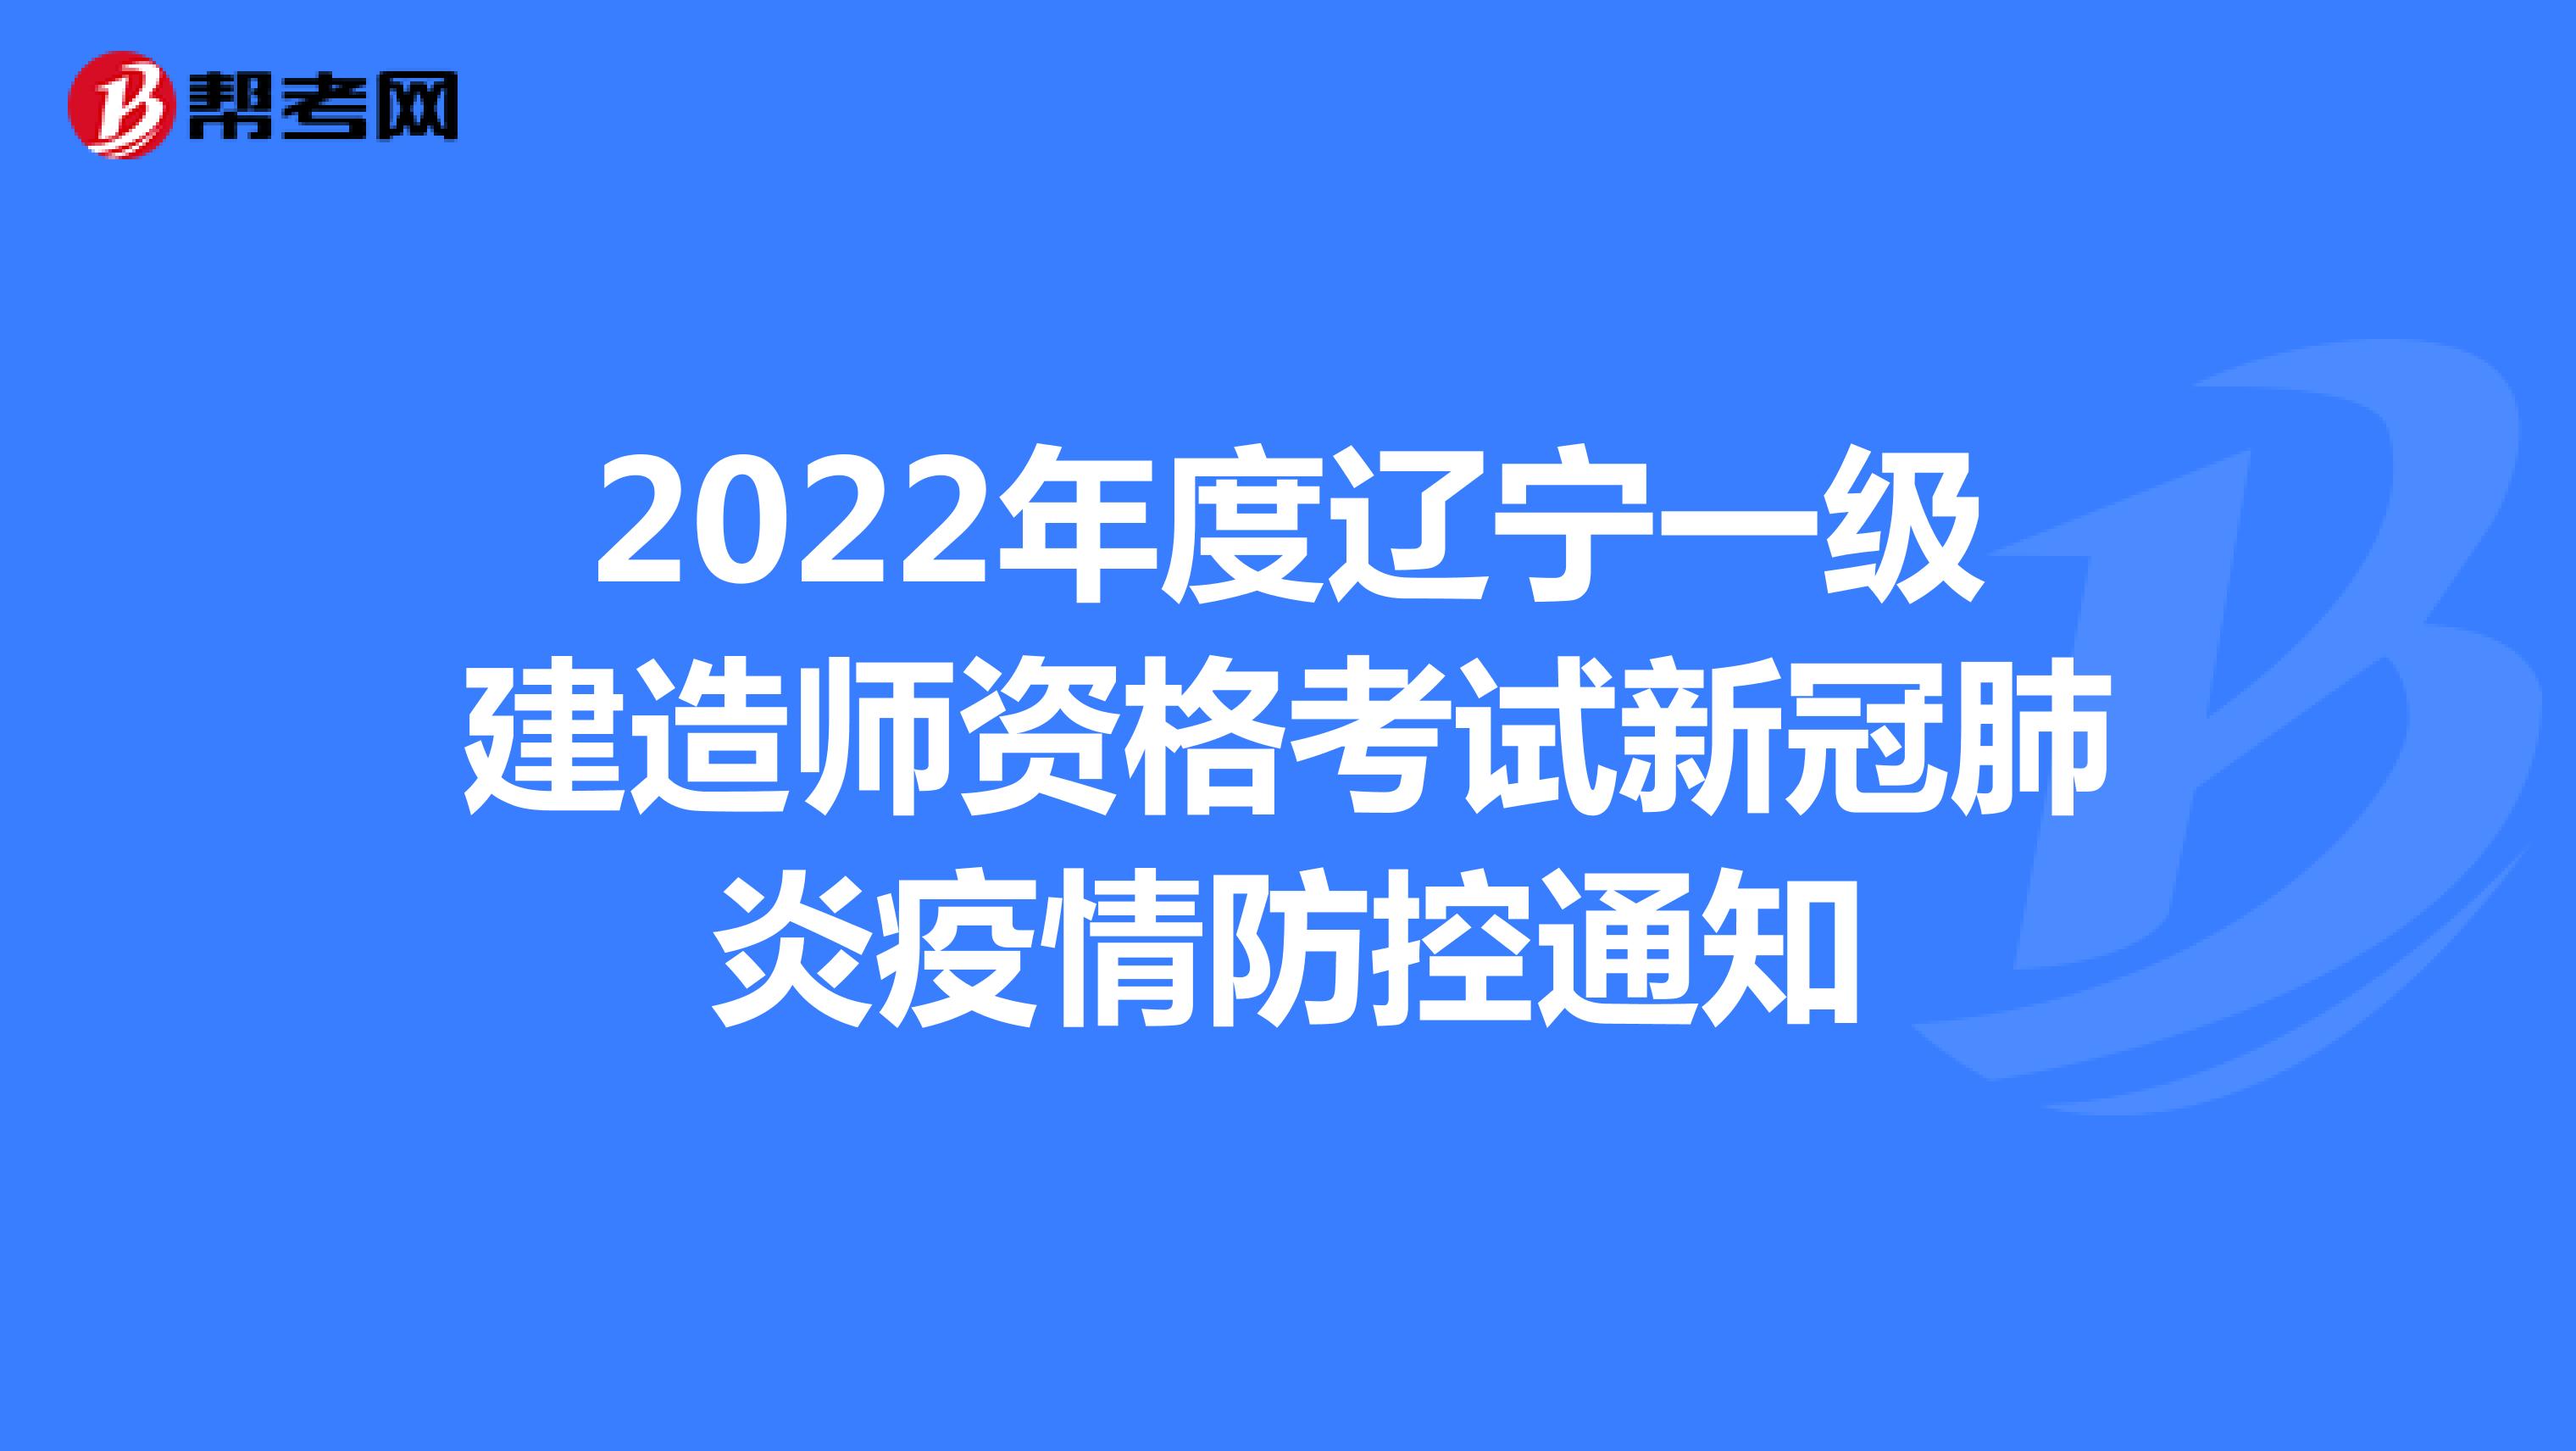 2022年度辽宁一级建造师资格考试新冠肺炎疫情防控通知